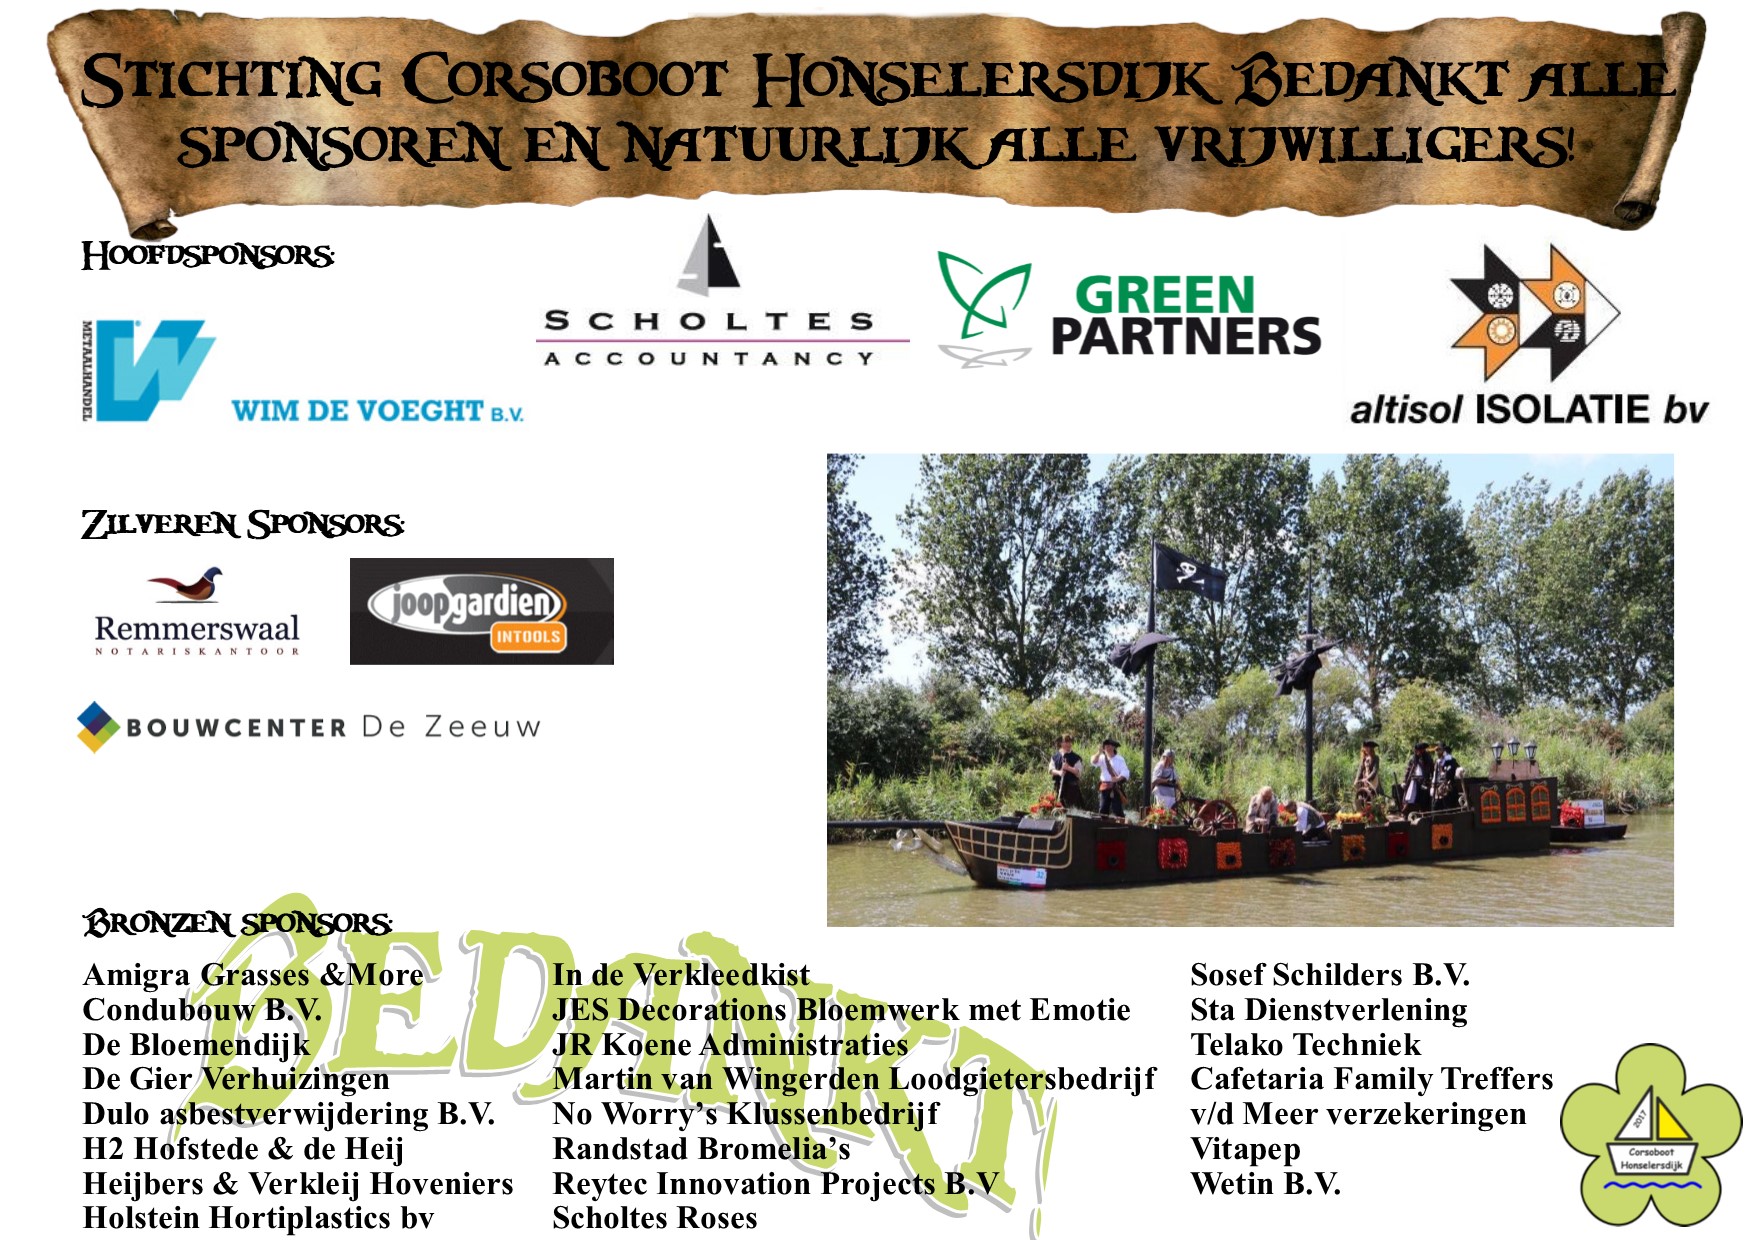 Corsoboot Honselersdijk krantenbericht sponsors